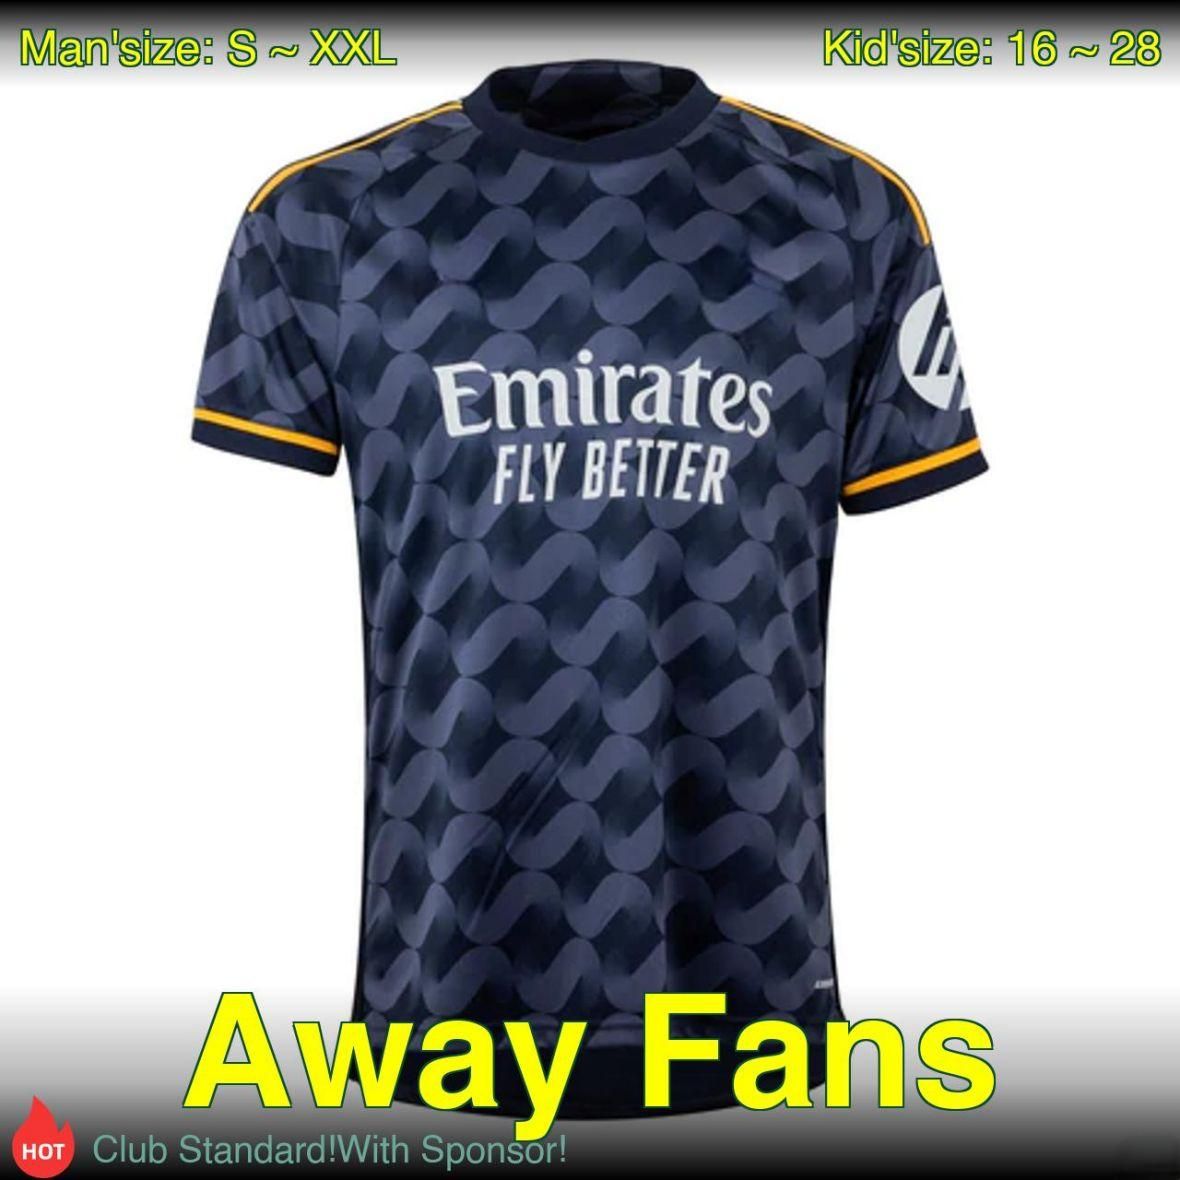 Away Fans